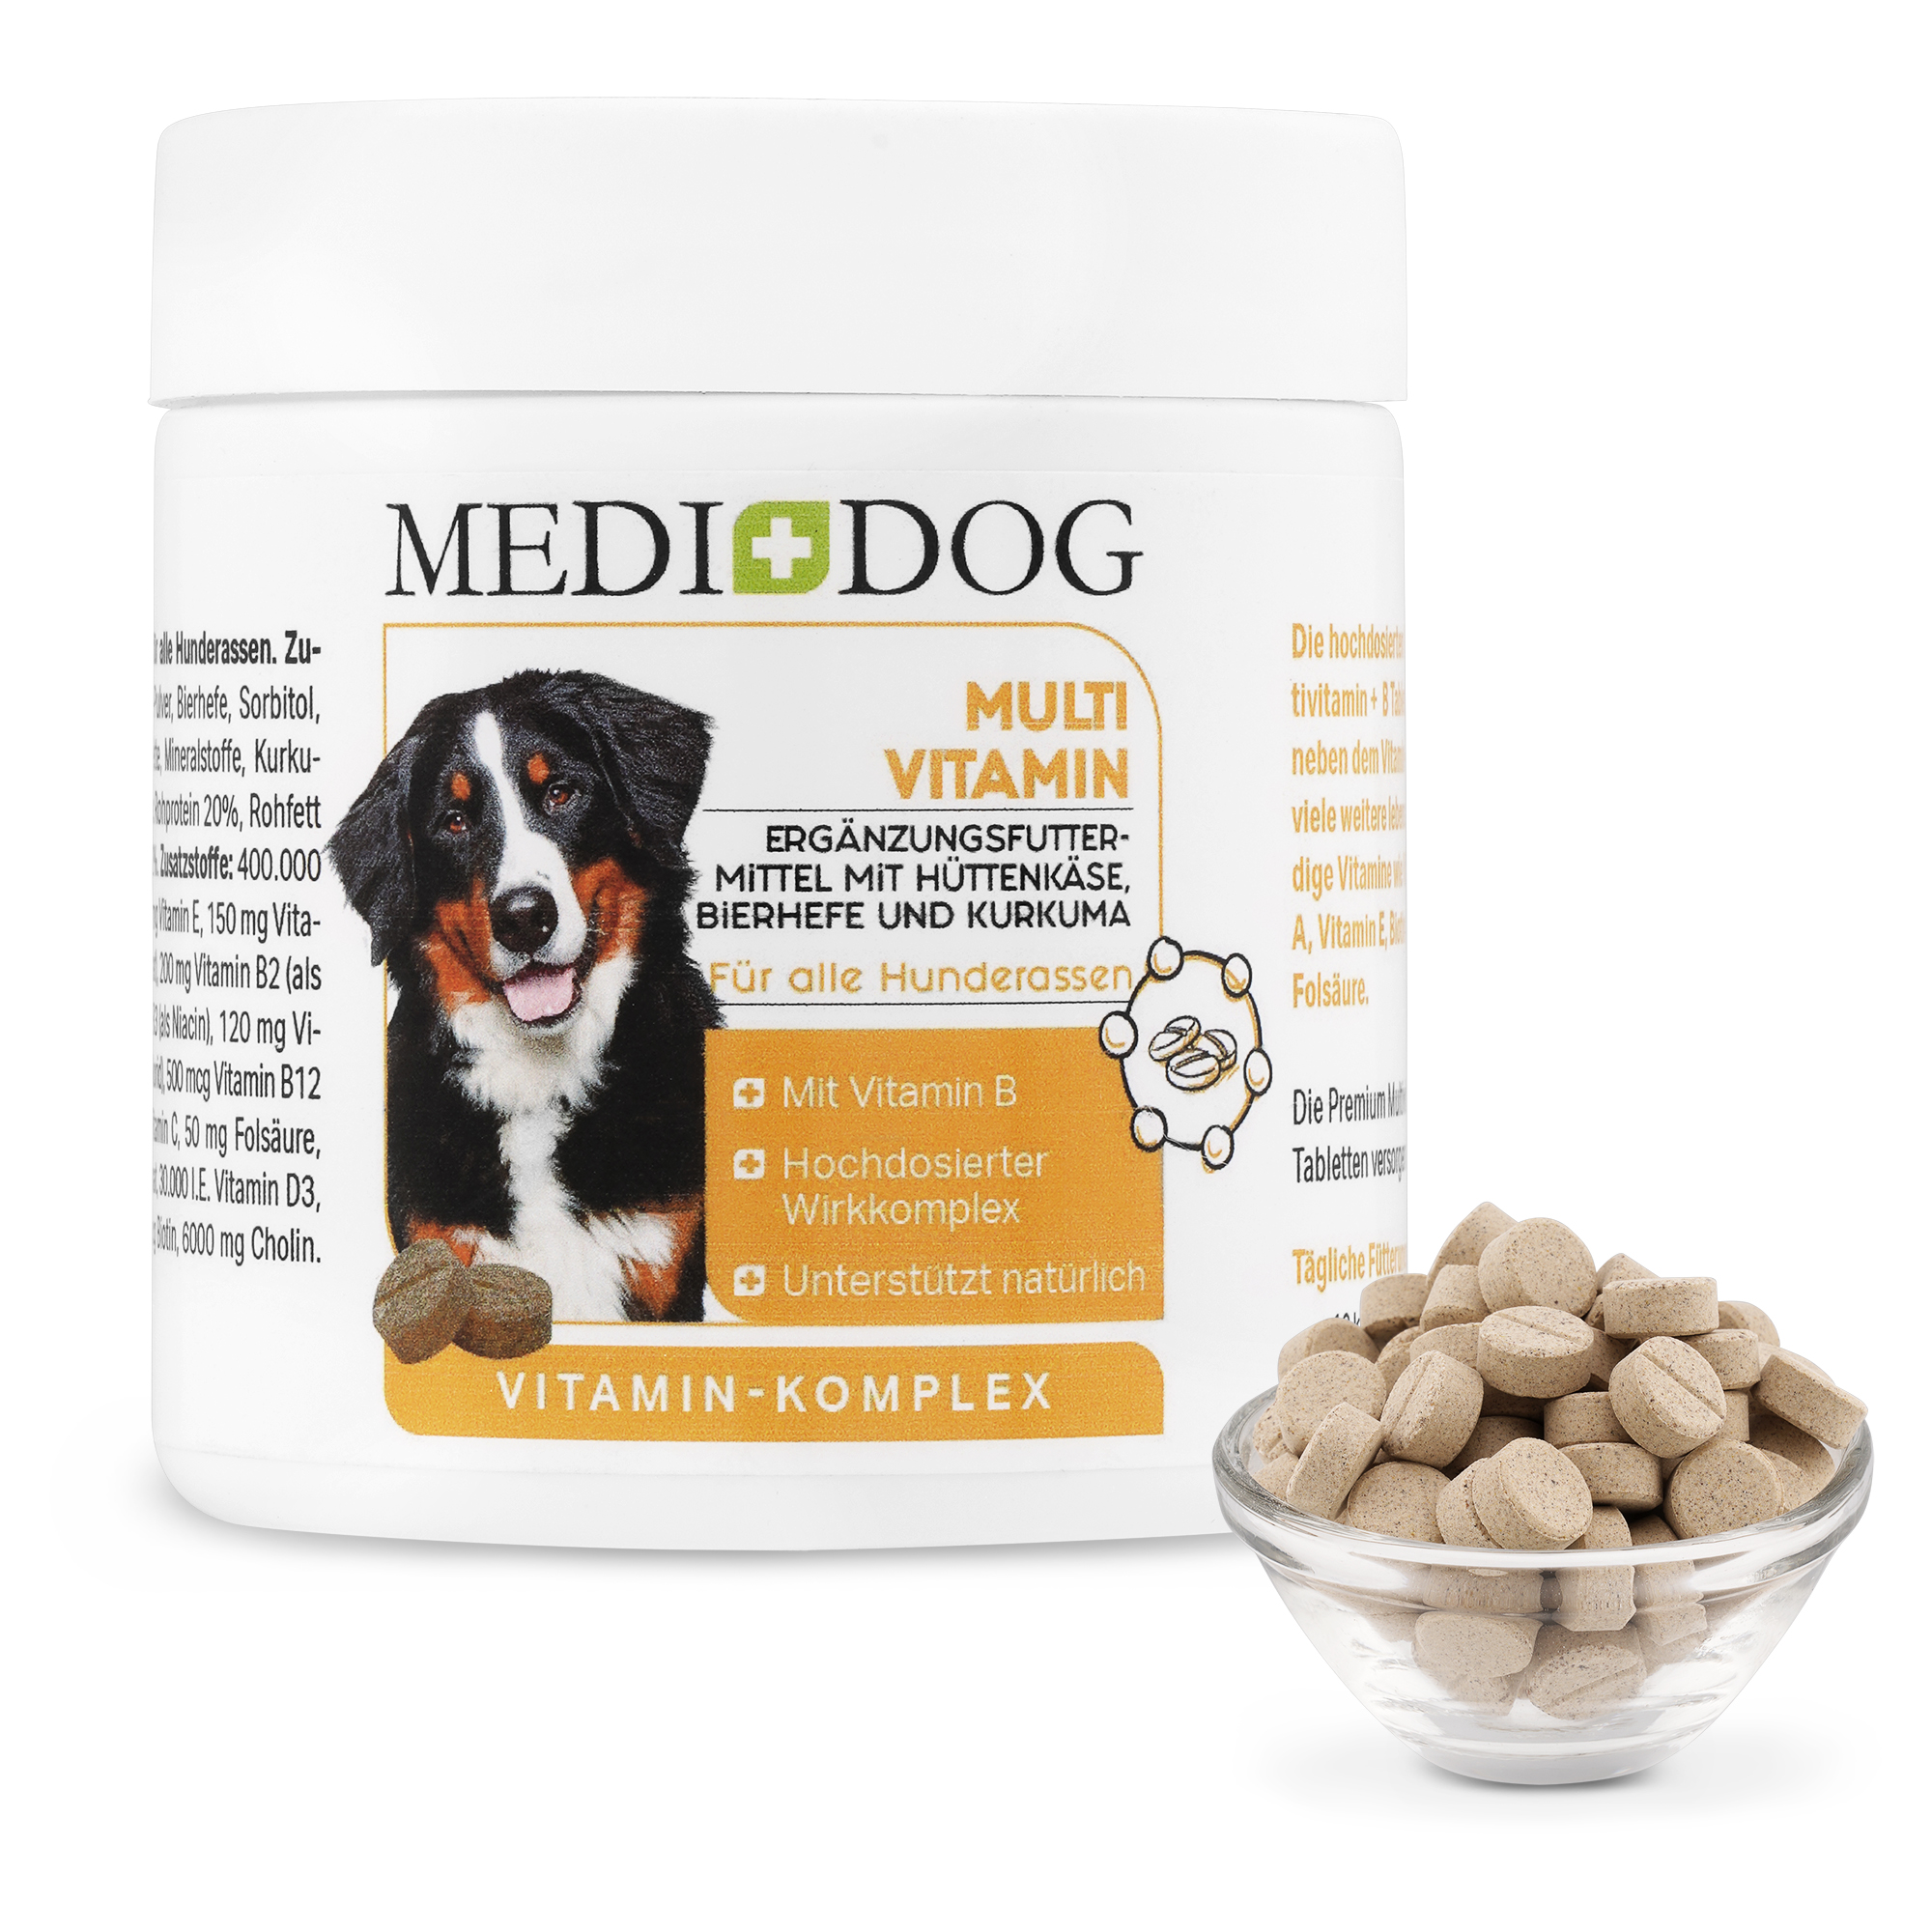 Medidog Multi Vitamin für Hunde -  hochdosierte schmackhafte Multivitamin + B Tabletten für Hunde